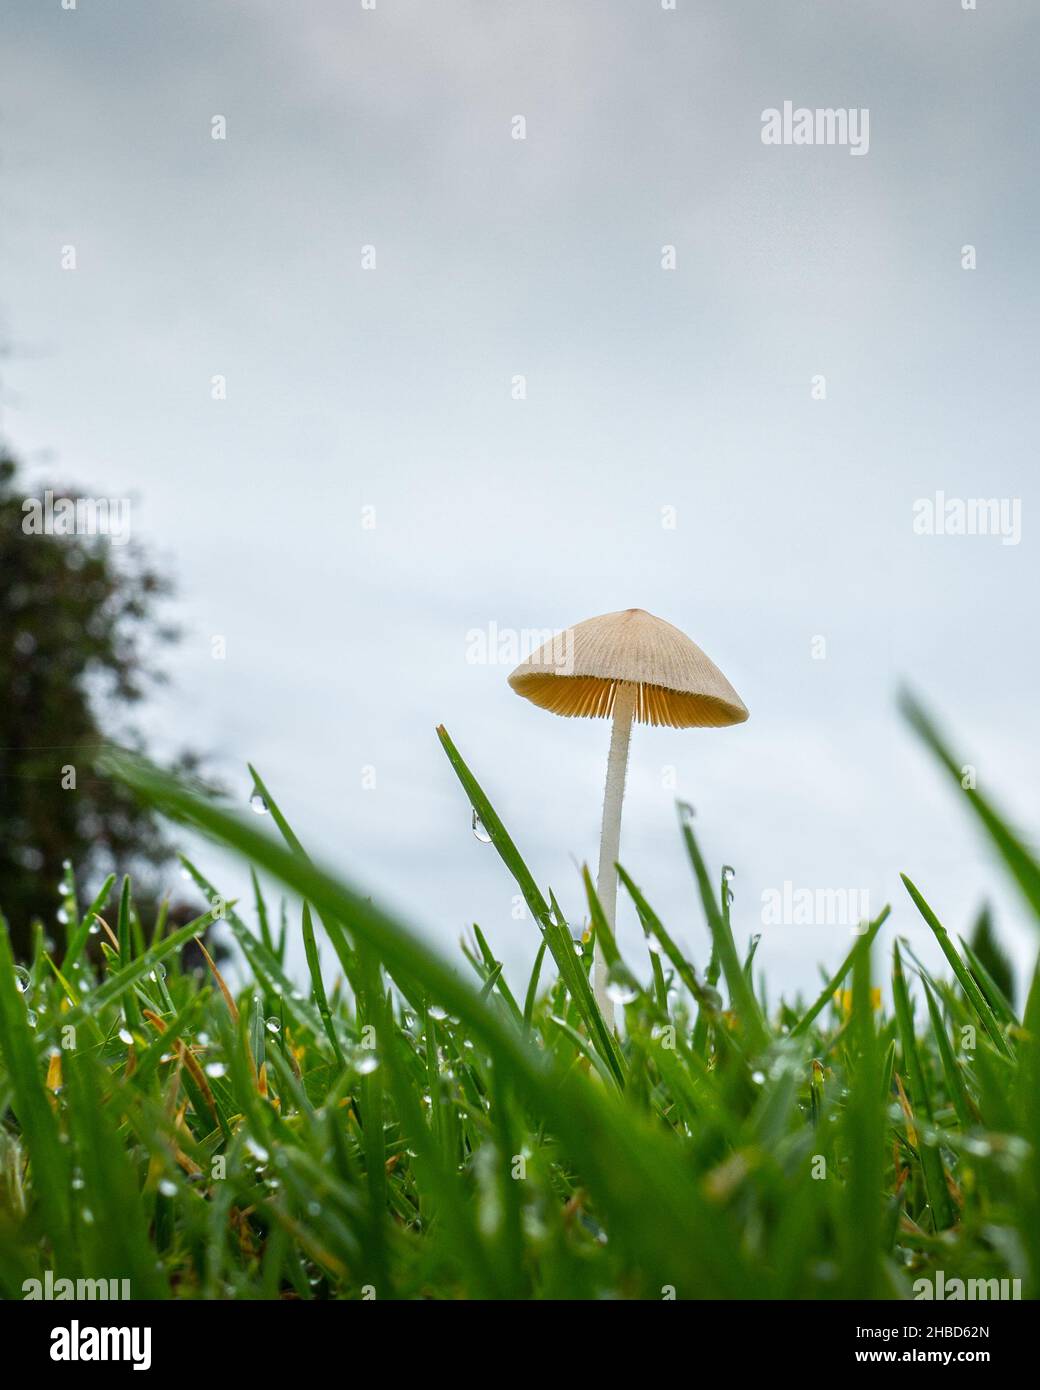 Immagine ravvicinata di un fungo selvatico che si schiocca nel prato del cortile anteriore dopo un incantesimo piovoso ad Auckland. Formato verticale. Foto Stock